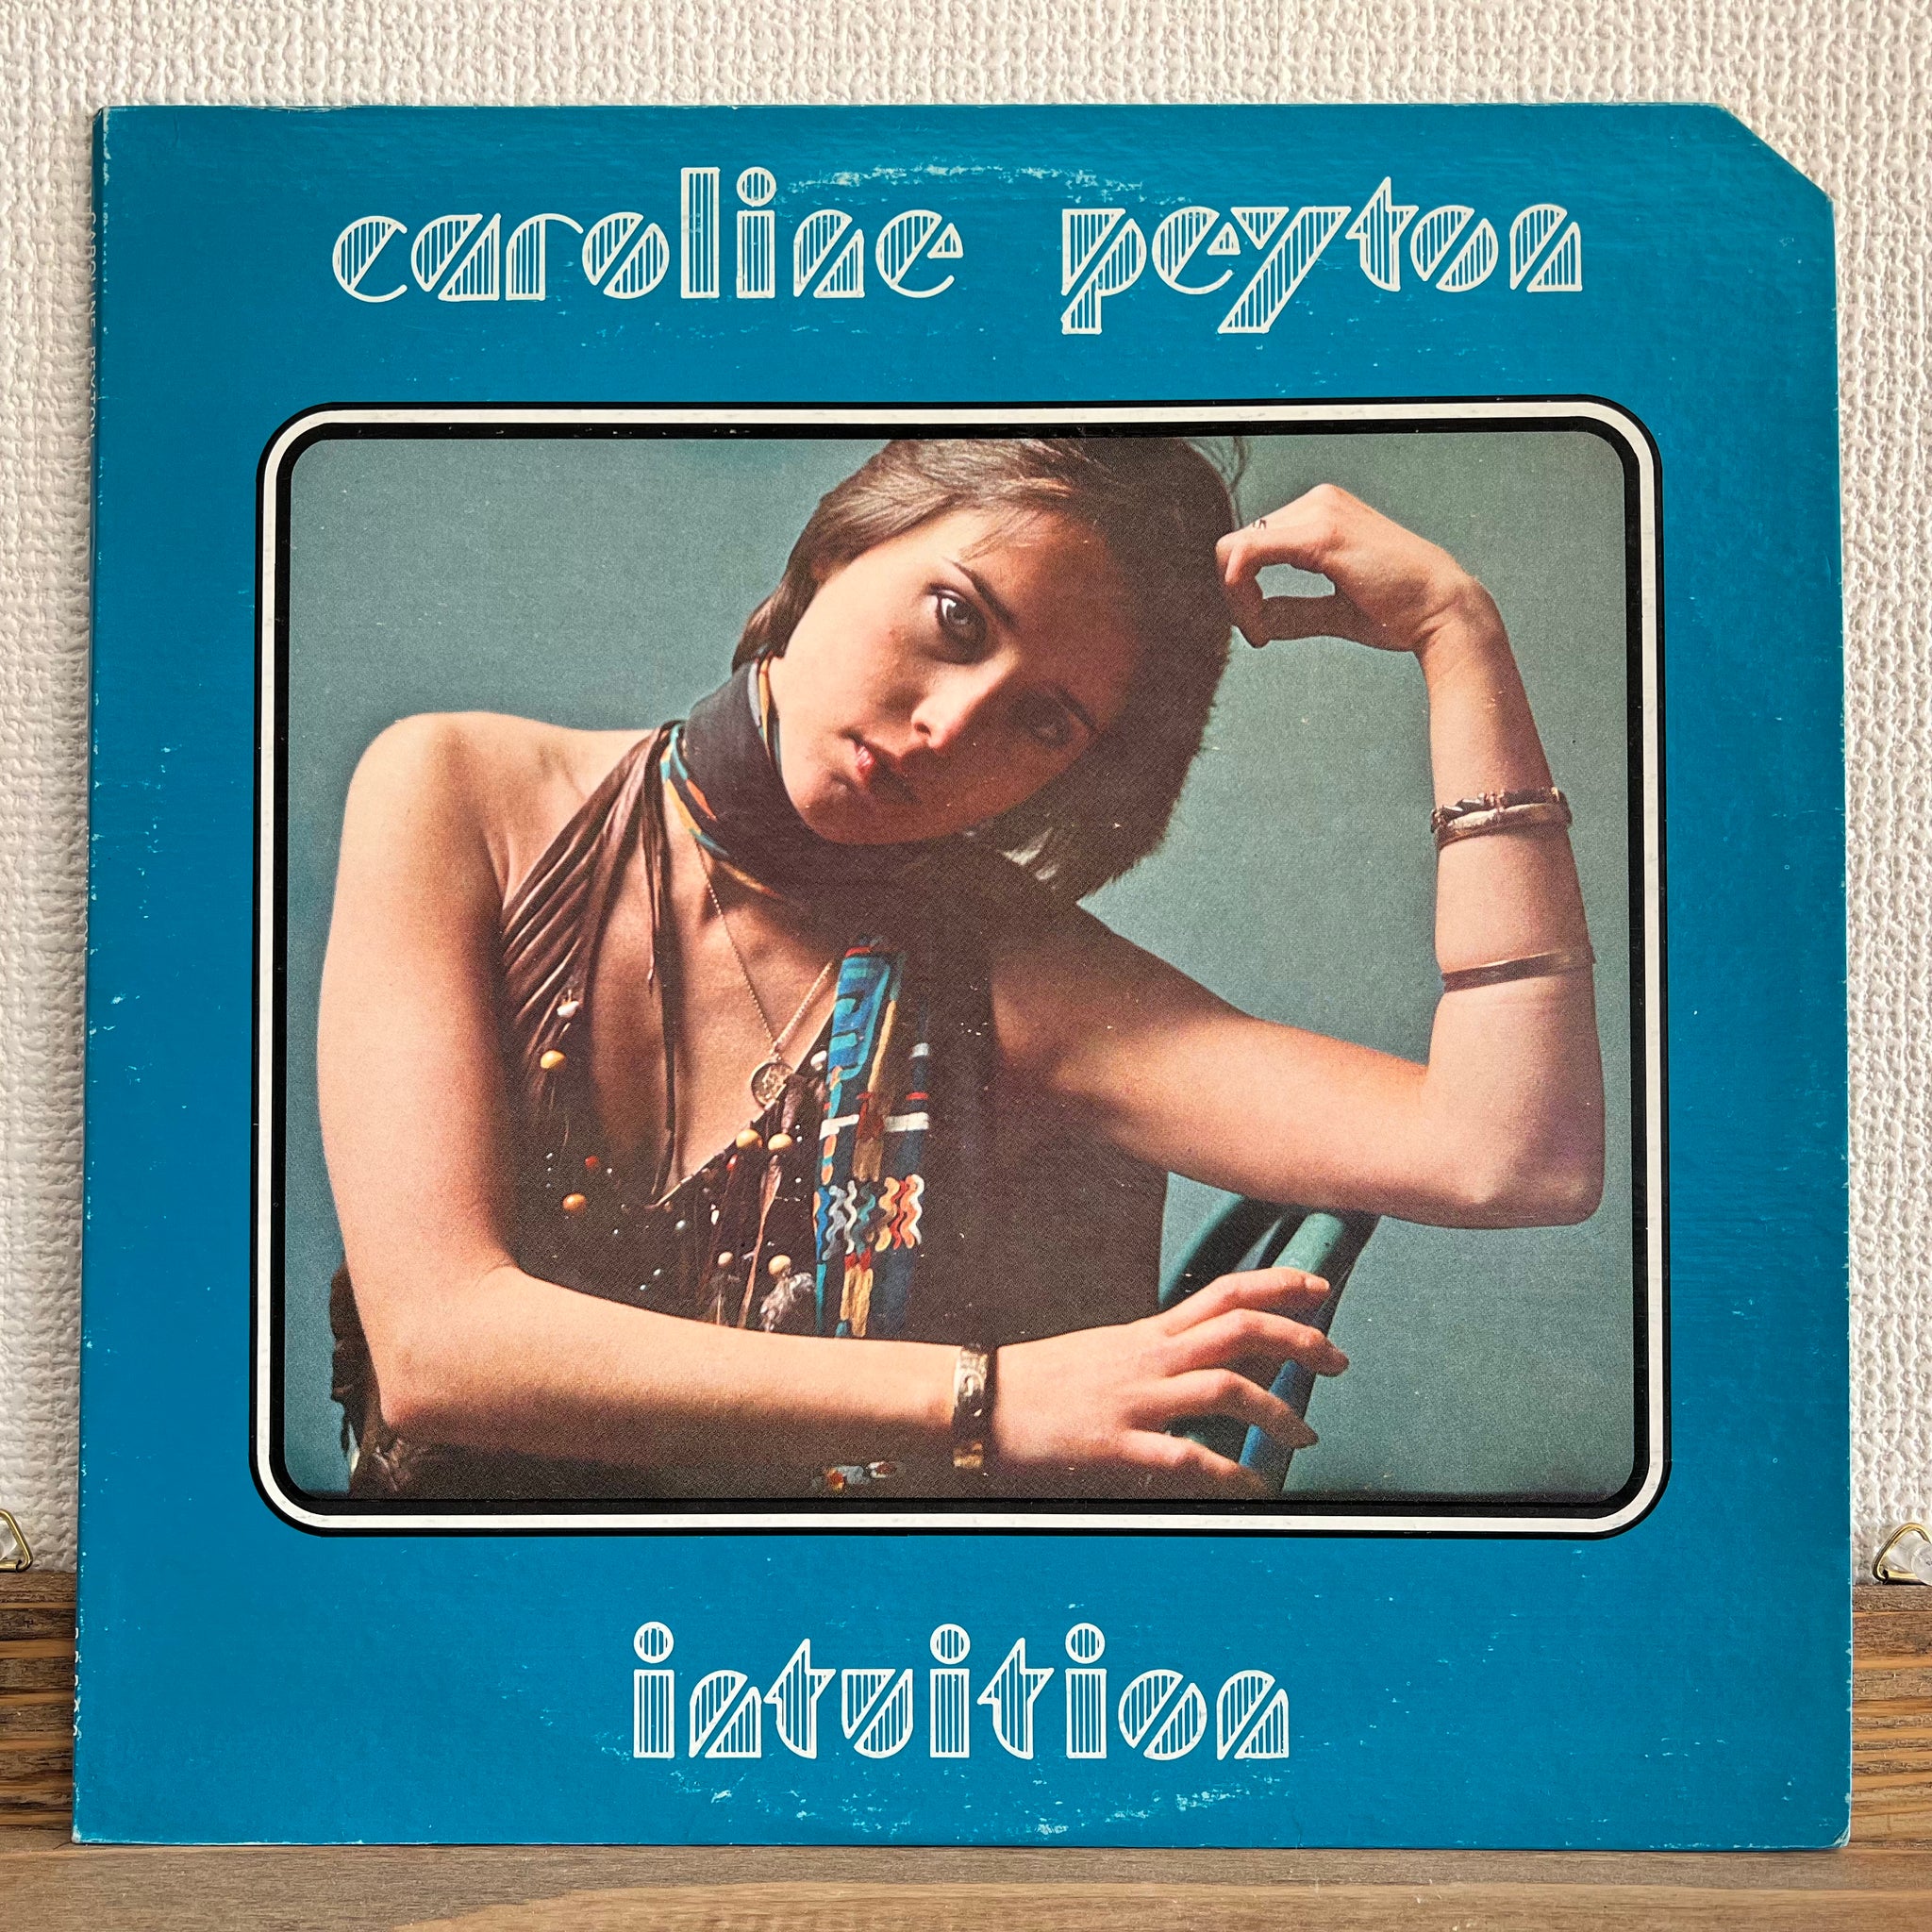 Caroline Peyton - Intuition